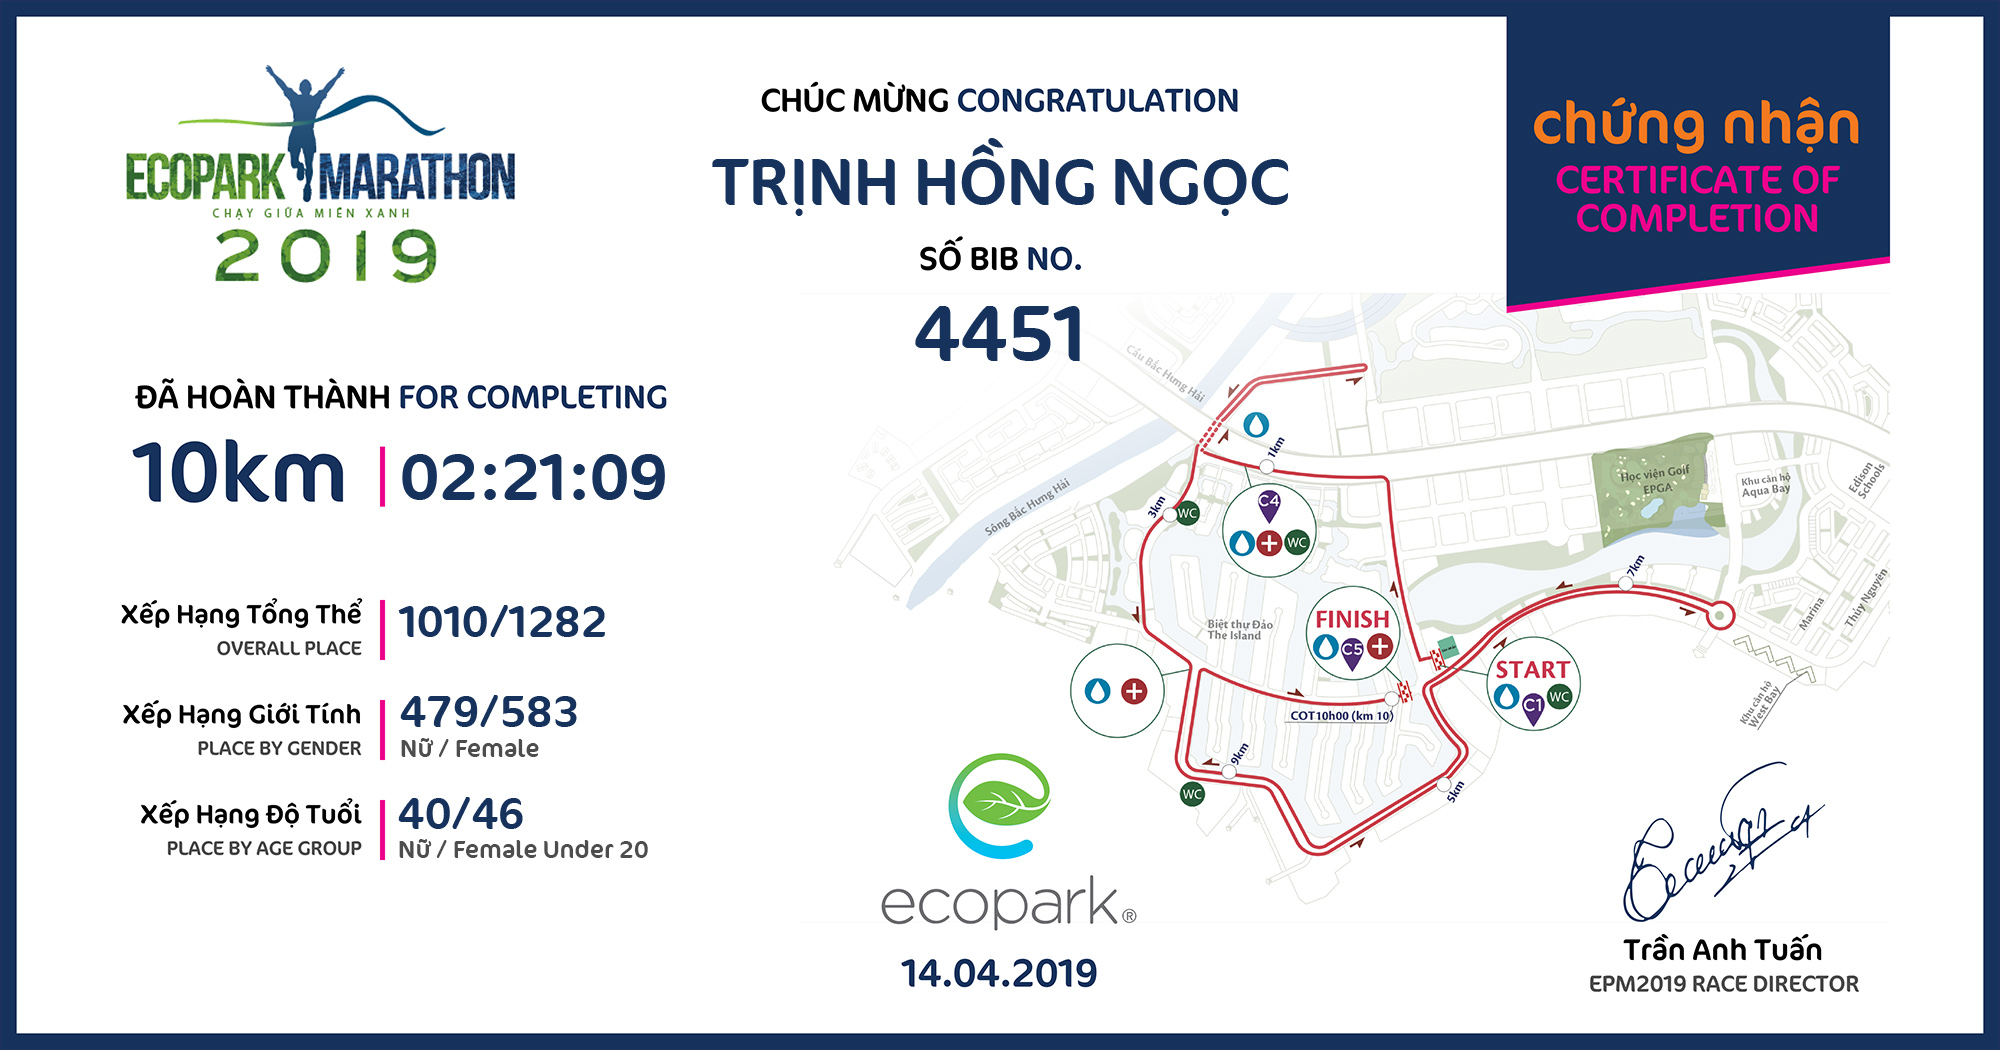 4451 - Trịnh Hồng Ngọc